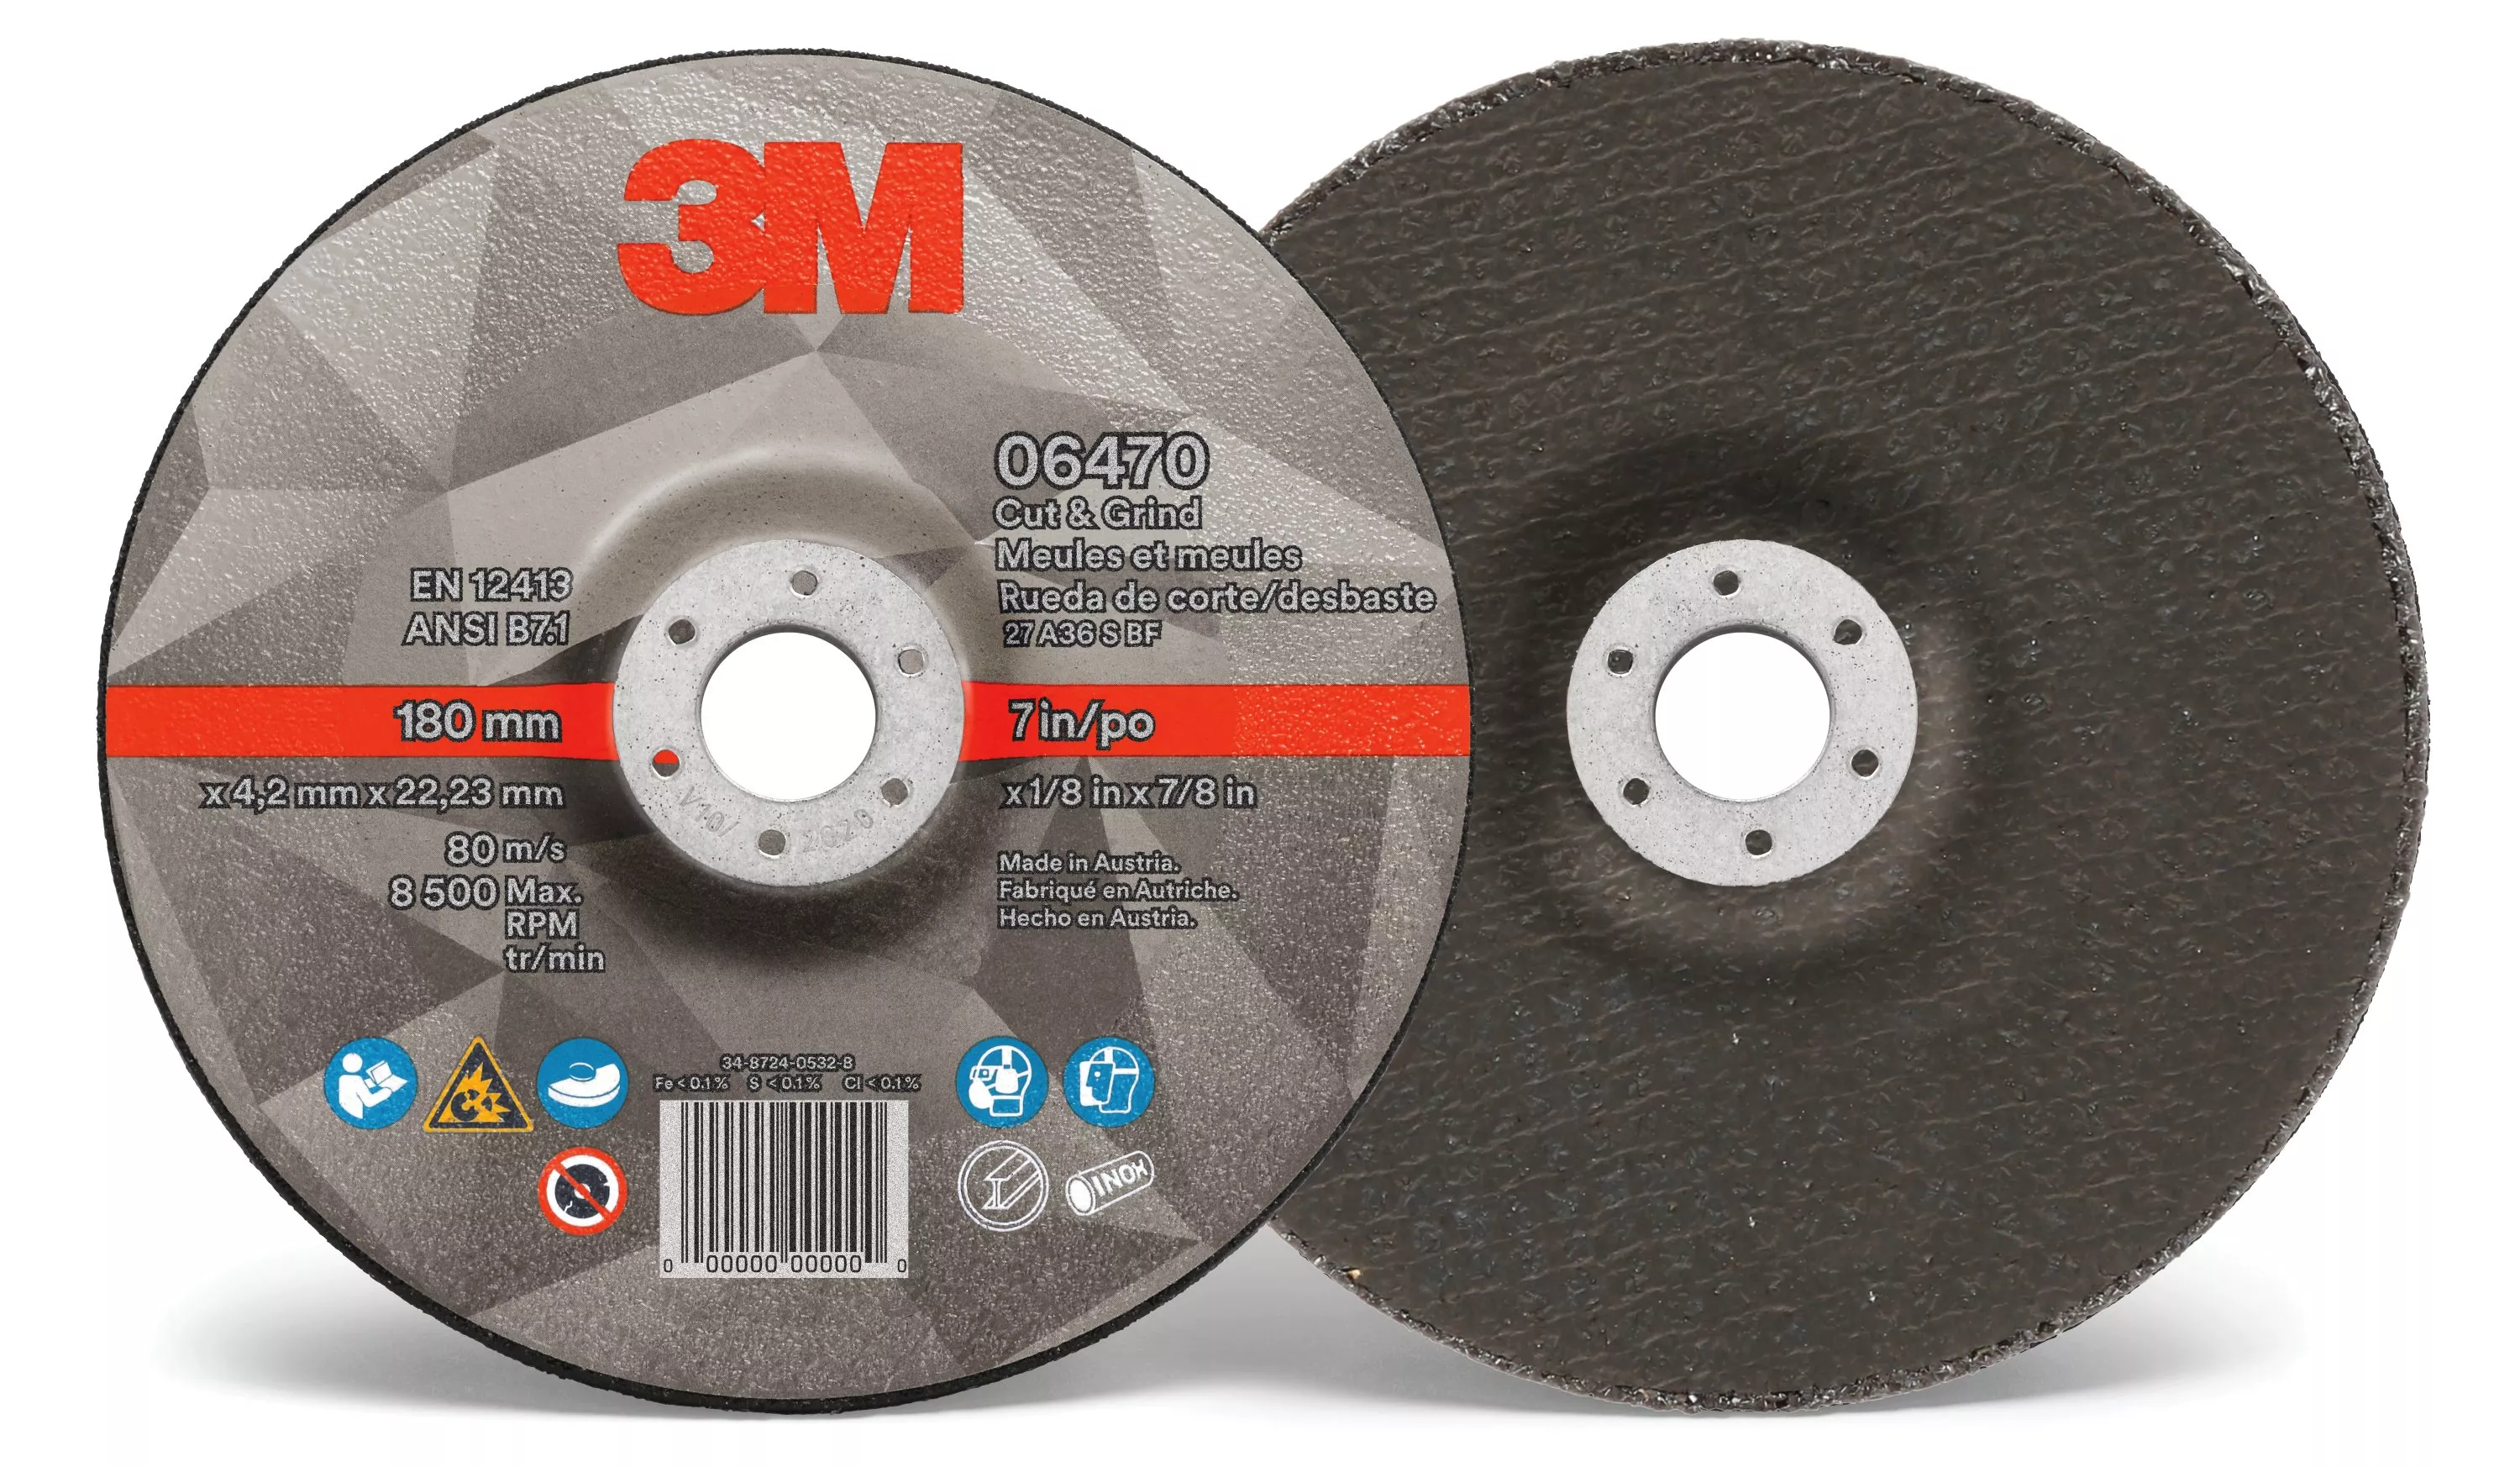 3M™ Cut & Grind Wheel, 06470, T27, 7 in x 1/8 in x 7/8 in, 10/Carton, 20
ea/Case